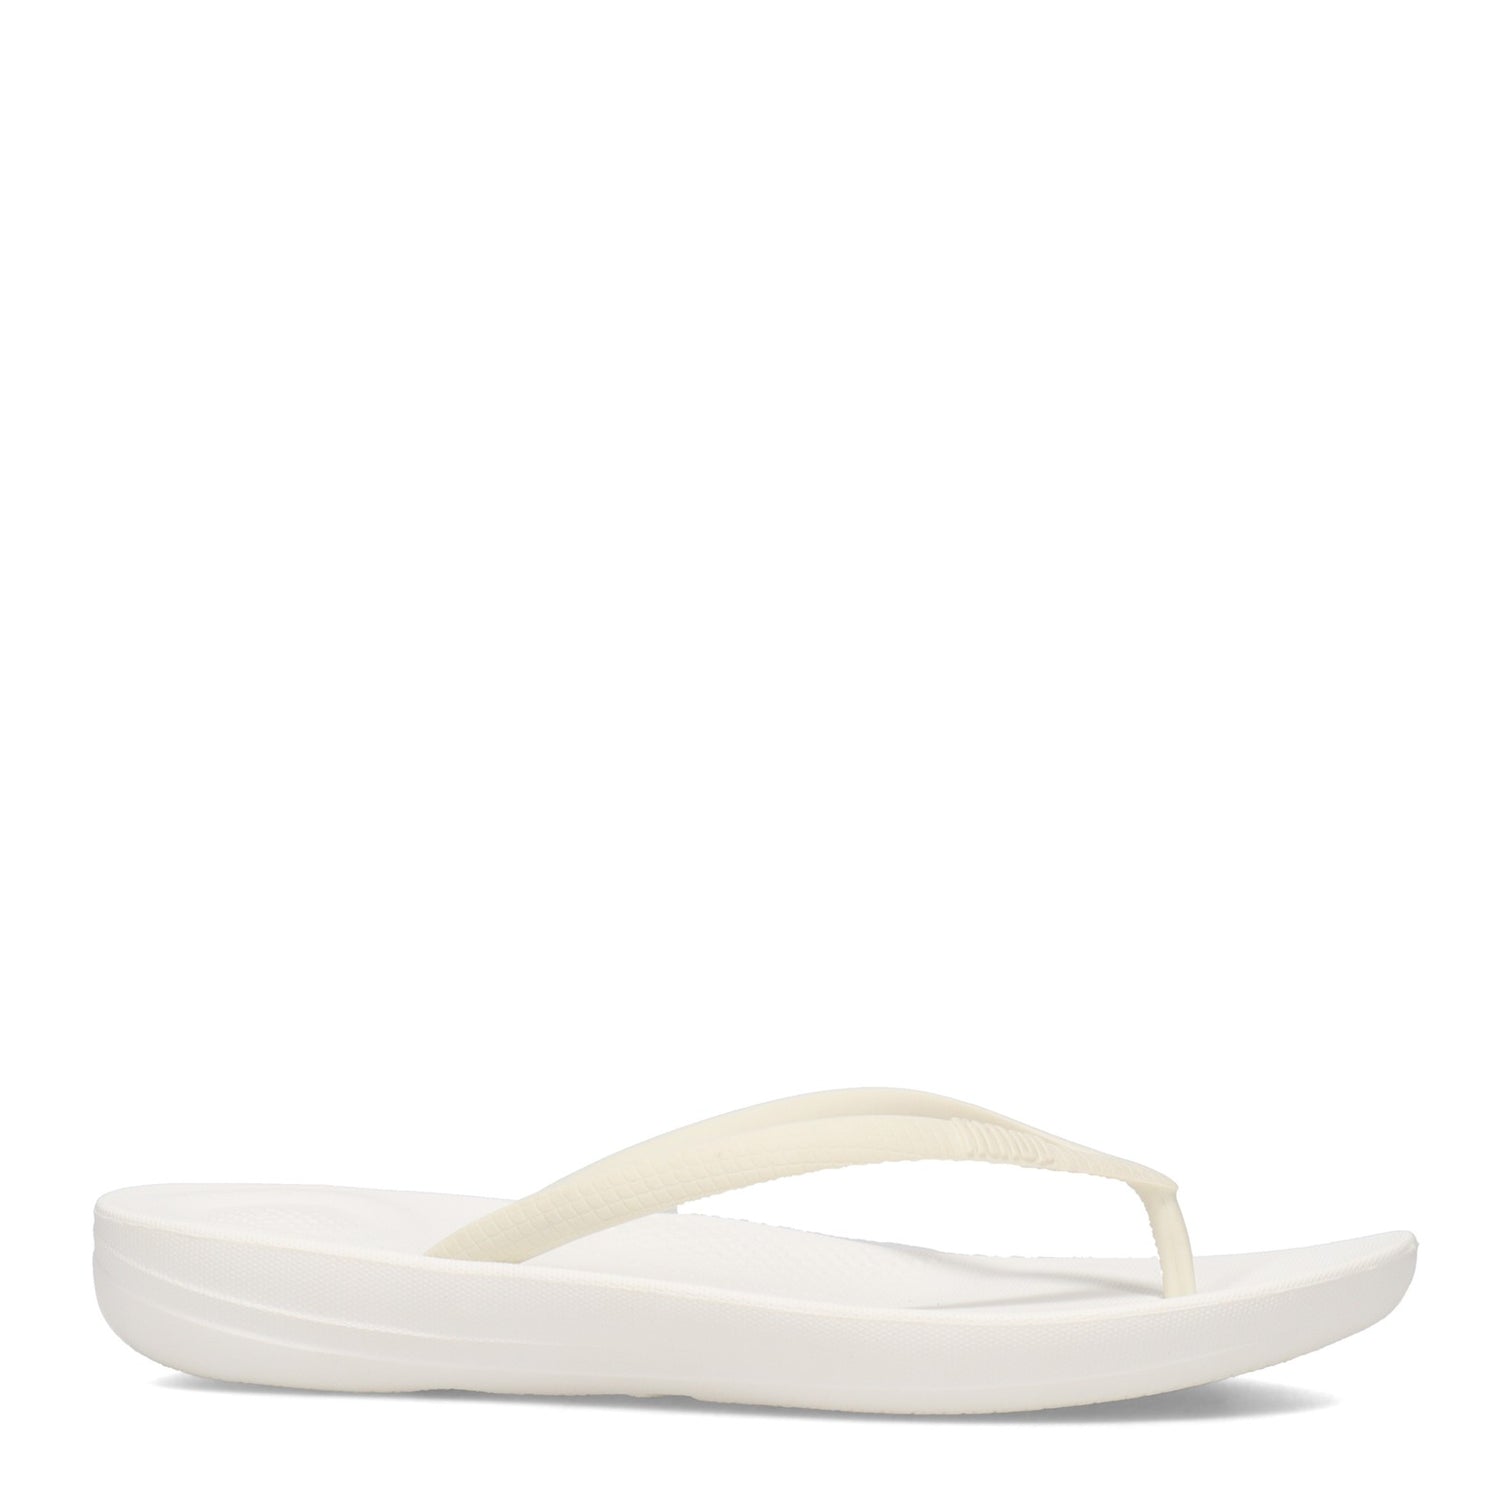 Peltz Shoes  Women's FitFlop iQushion Flip-Flop Urban White E54-194